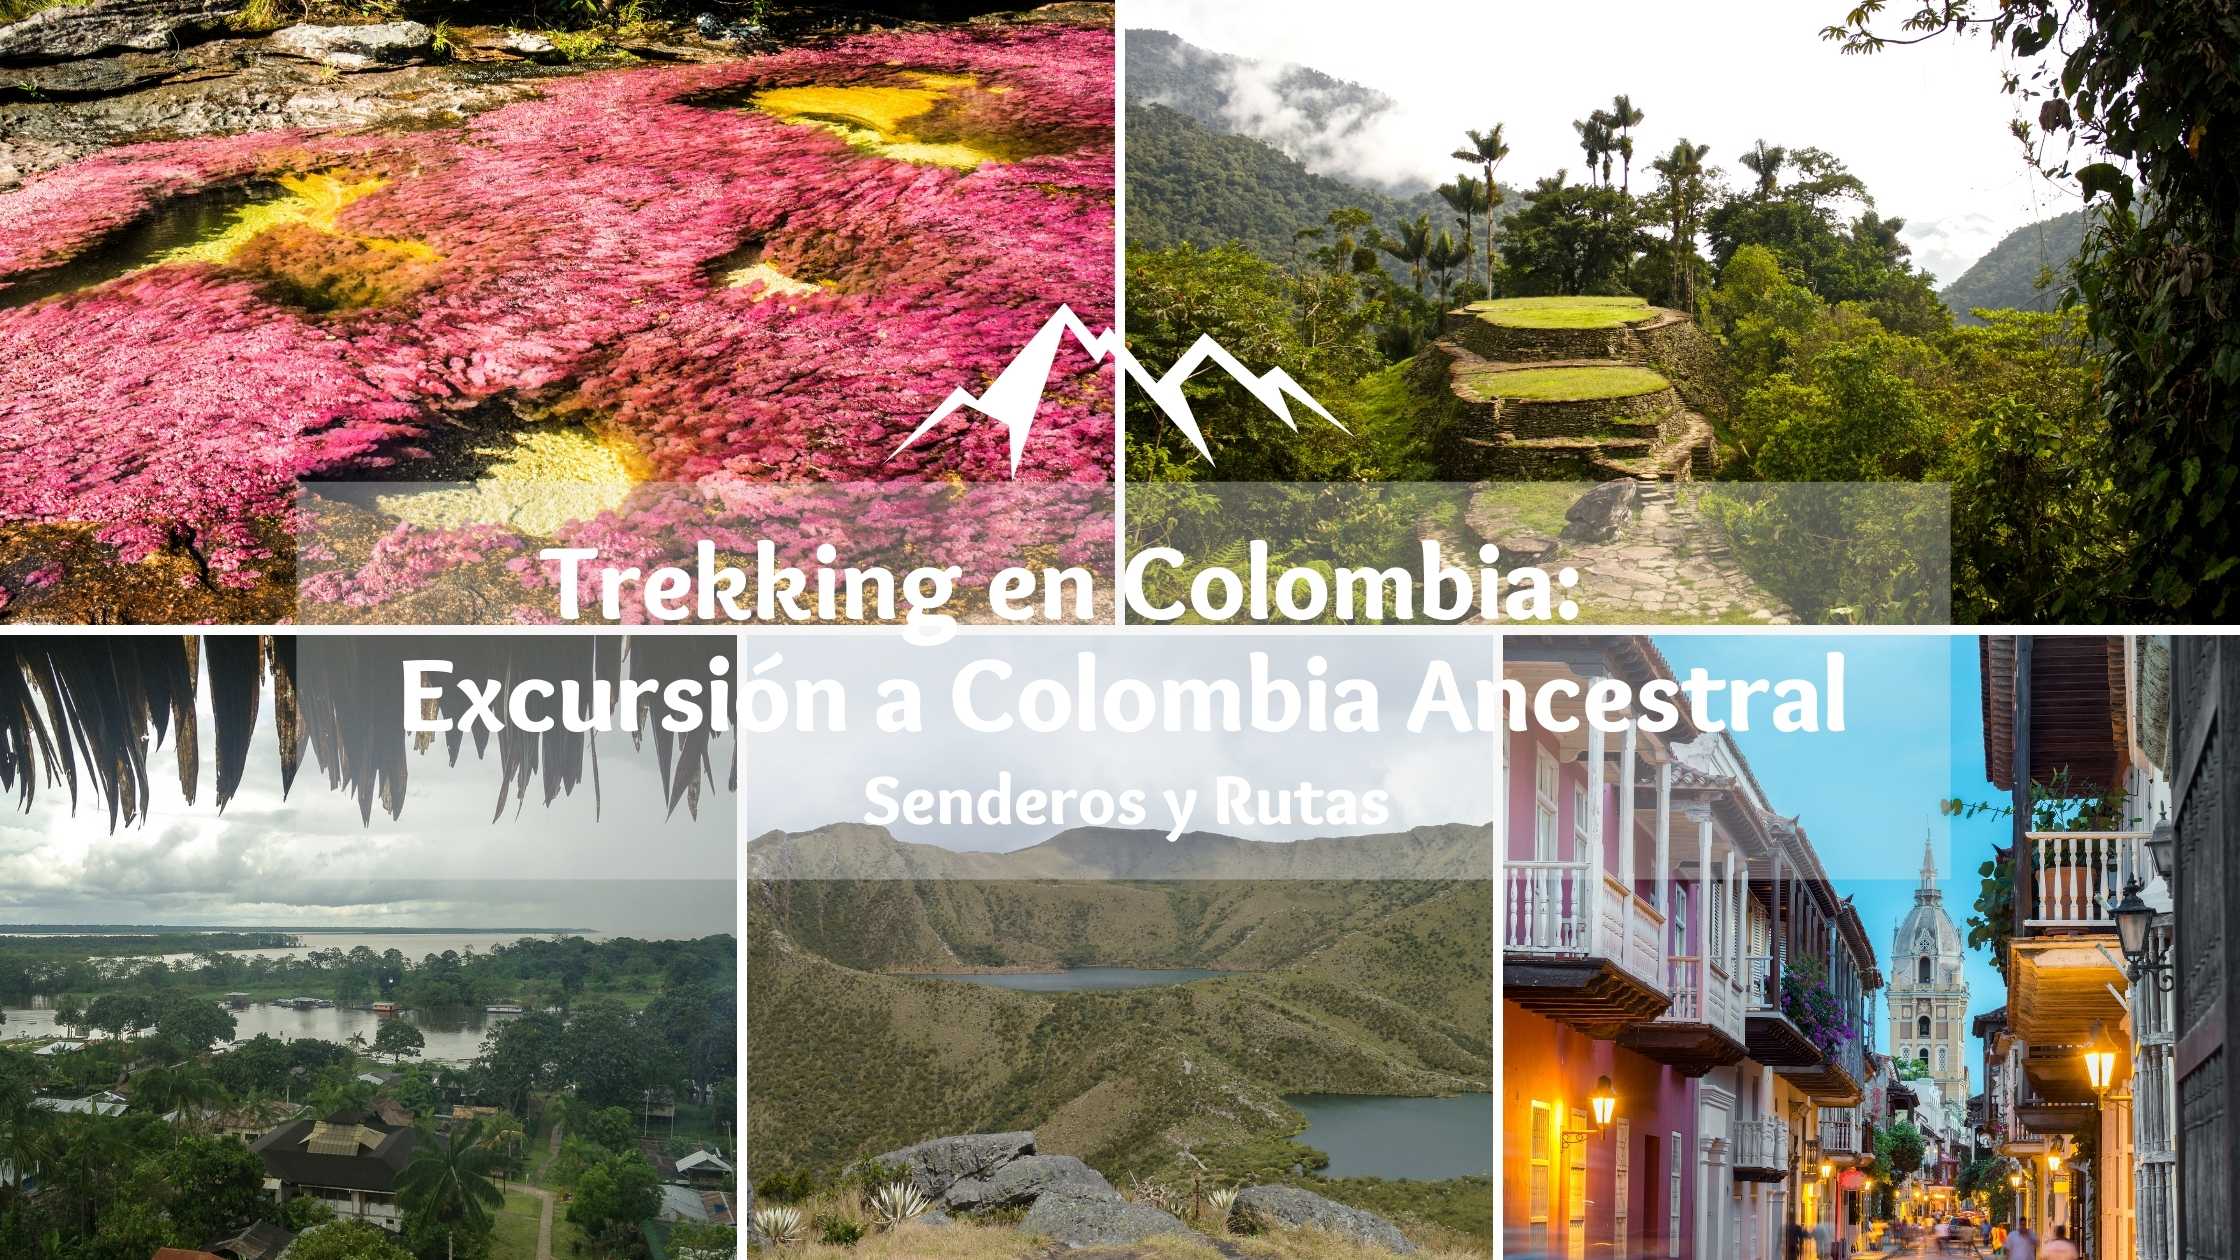 Trekking en Colombia - Excursión a Colombia Ancestral